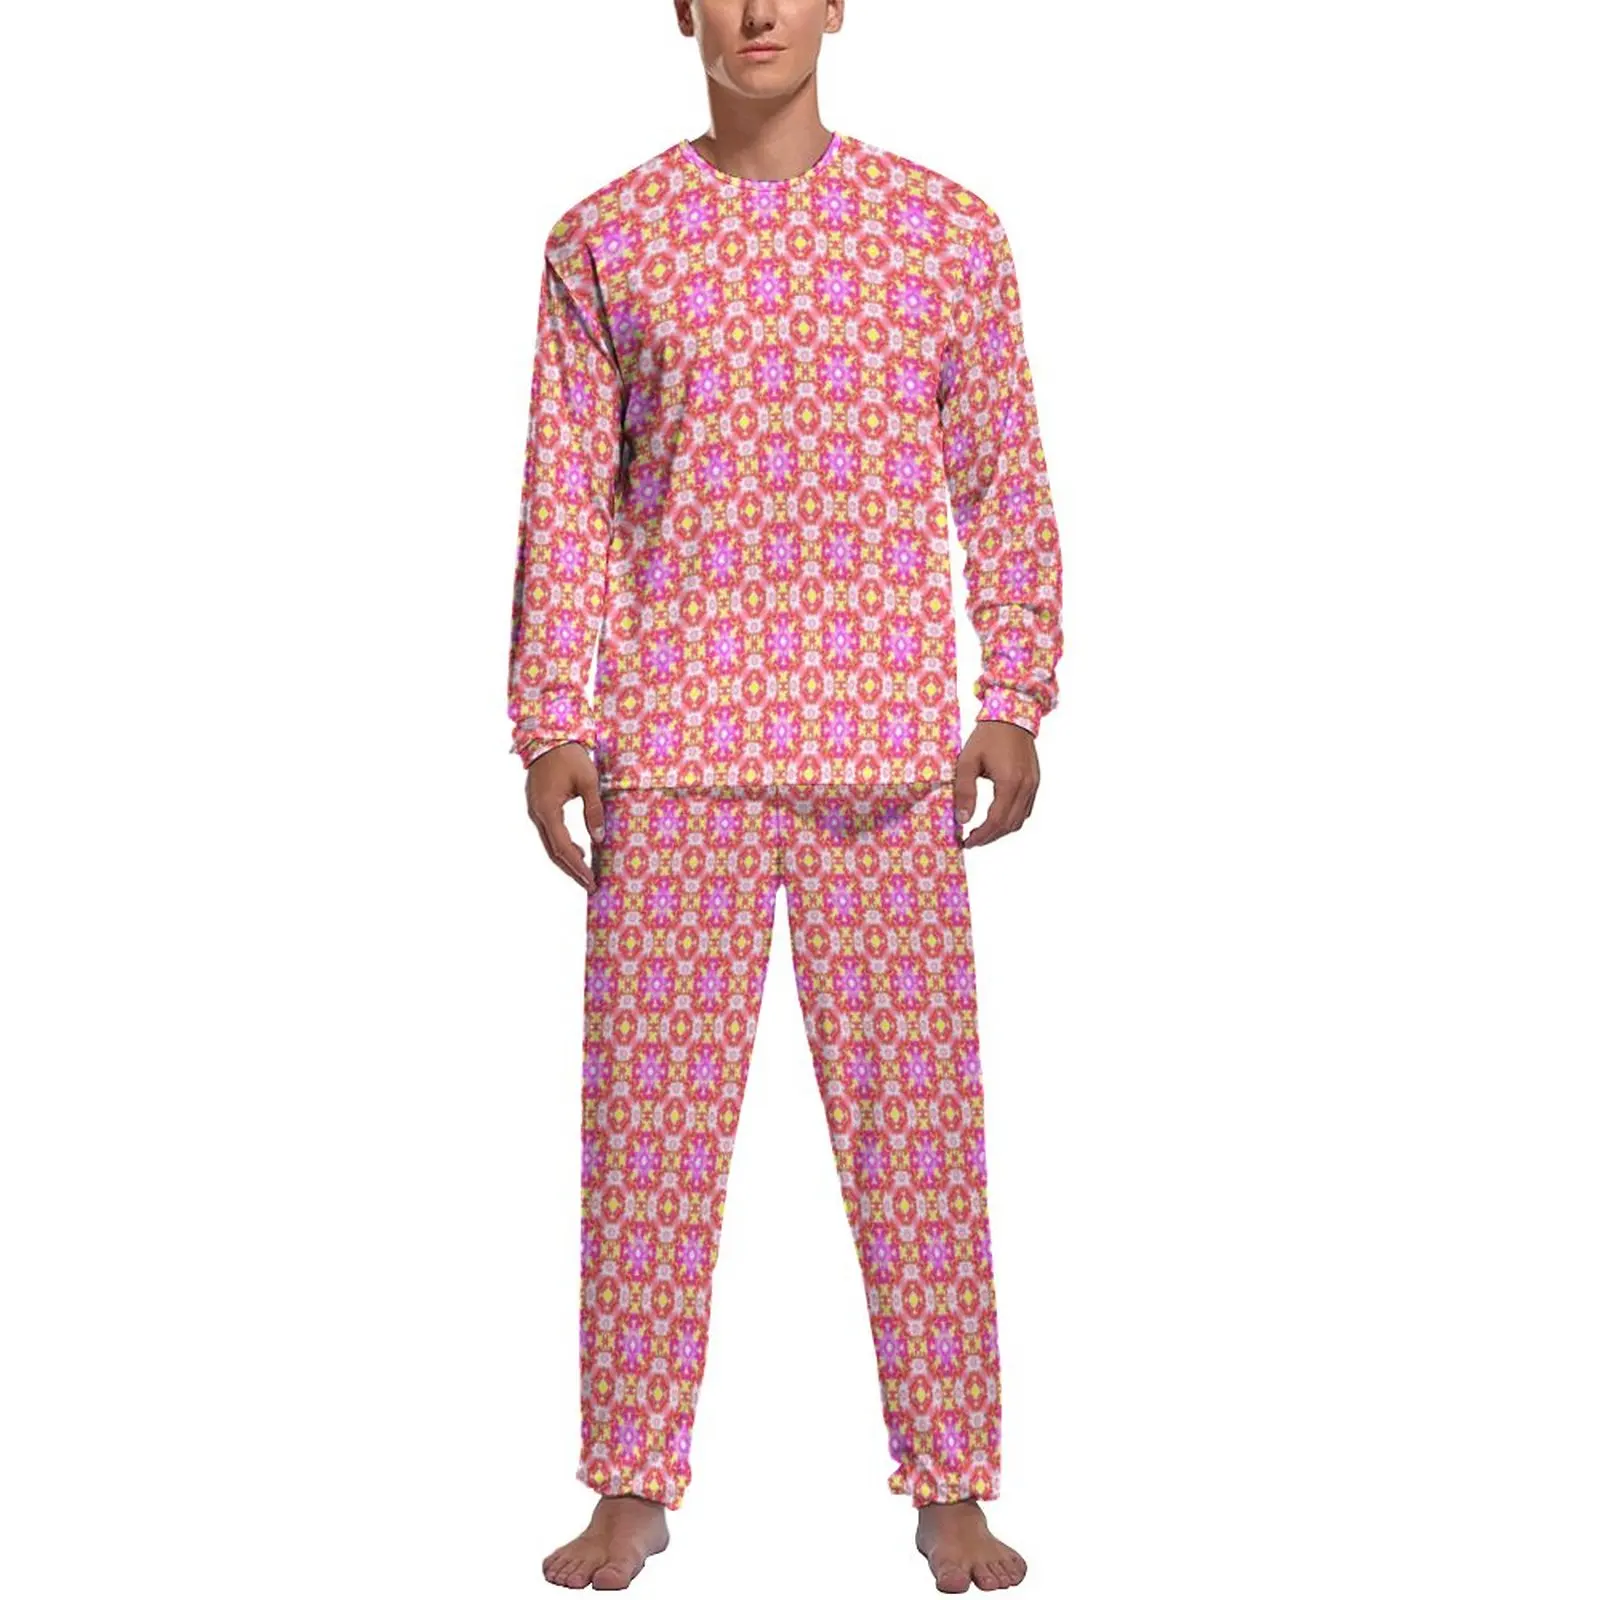 

Retro Daisy Pajamas Winter 2 Pieces Vintage Floral Print Romantic Pajama Sets Men Long-Sleeve Bedroom Design Sleepwear